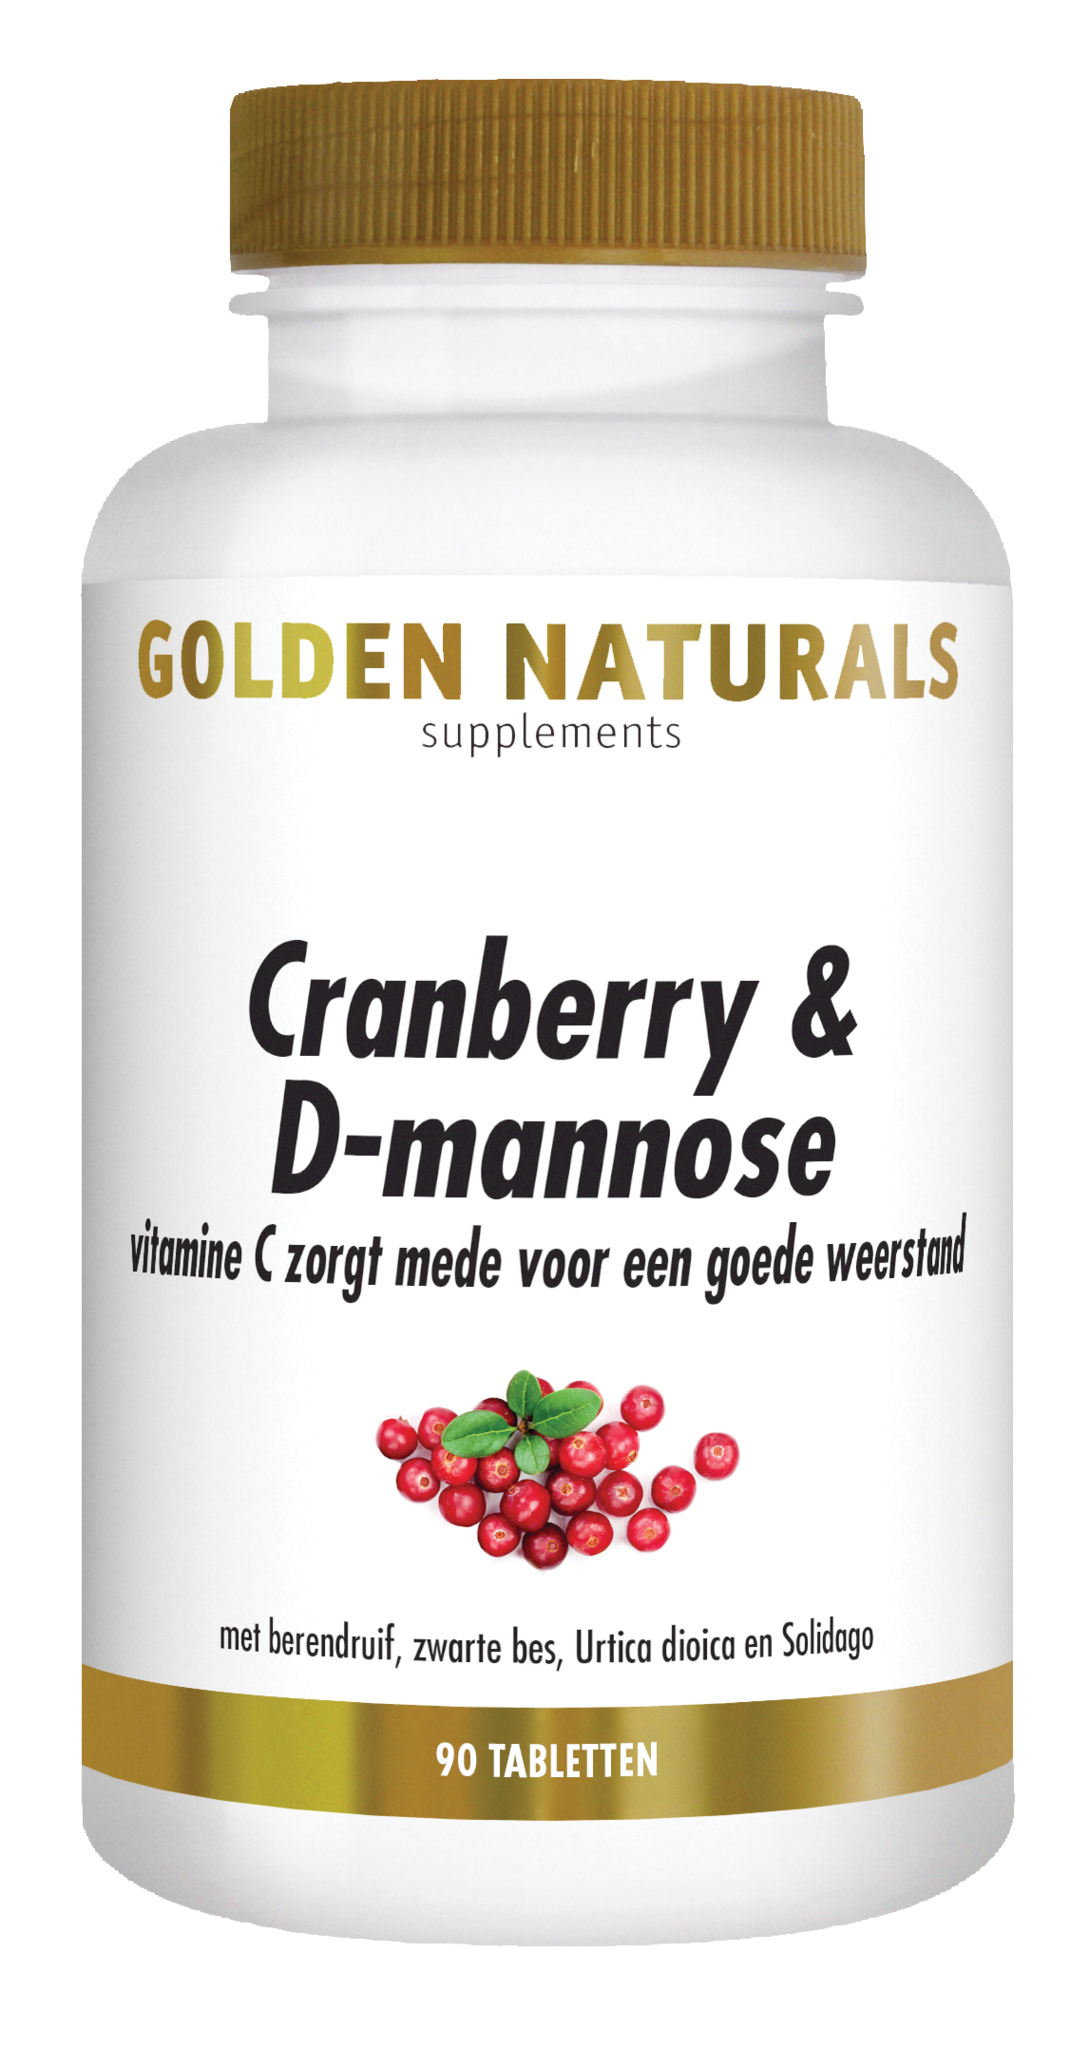 Golden Naturals Golden Naturals Cranberry & D-Mannose (90 Tabletten)